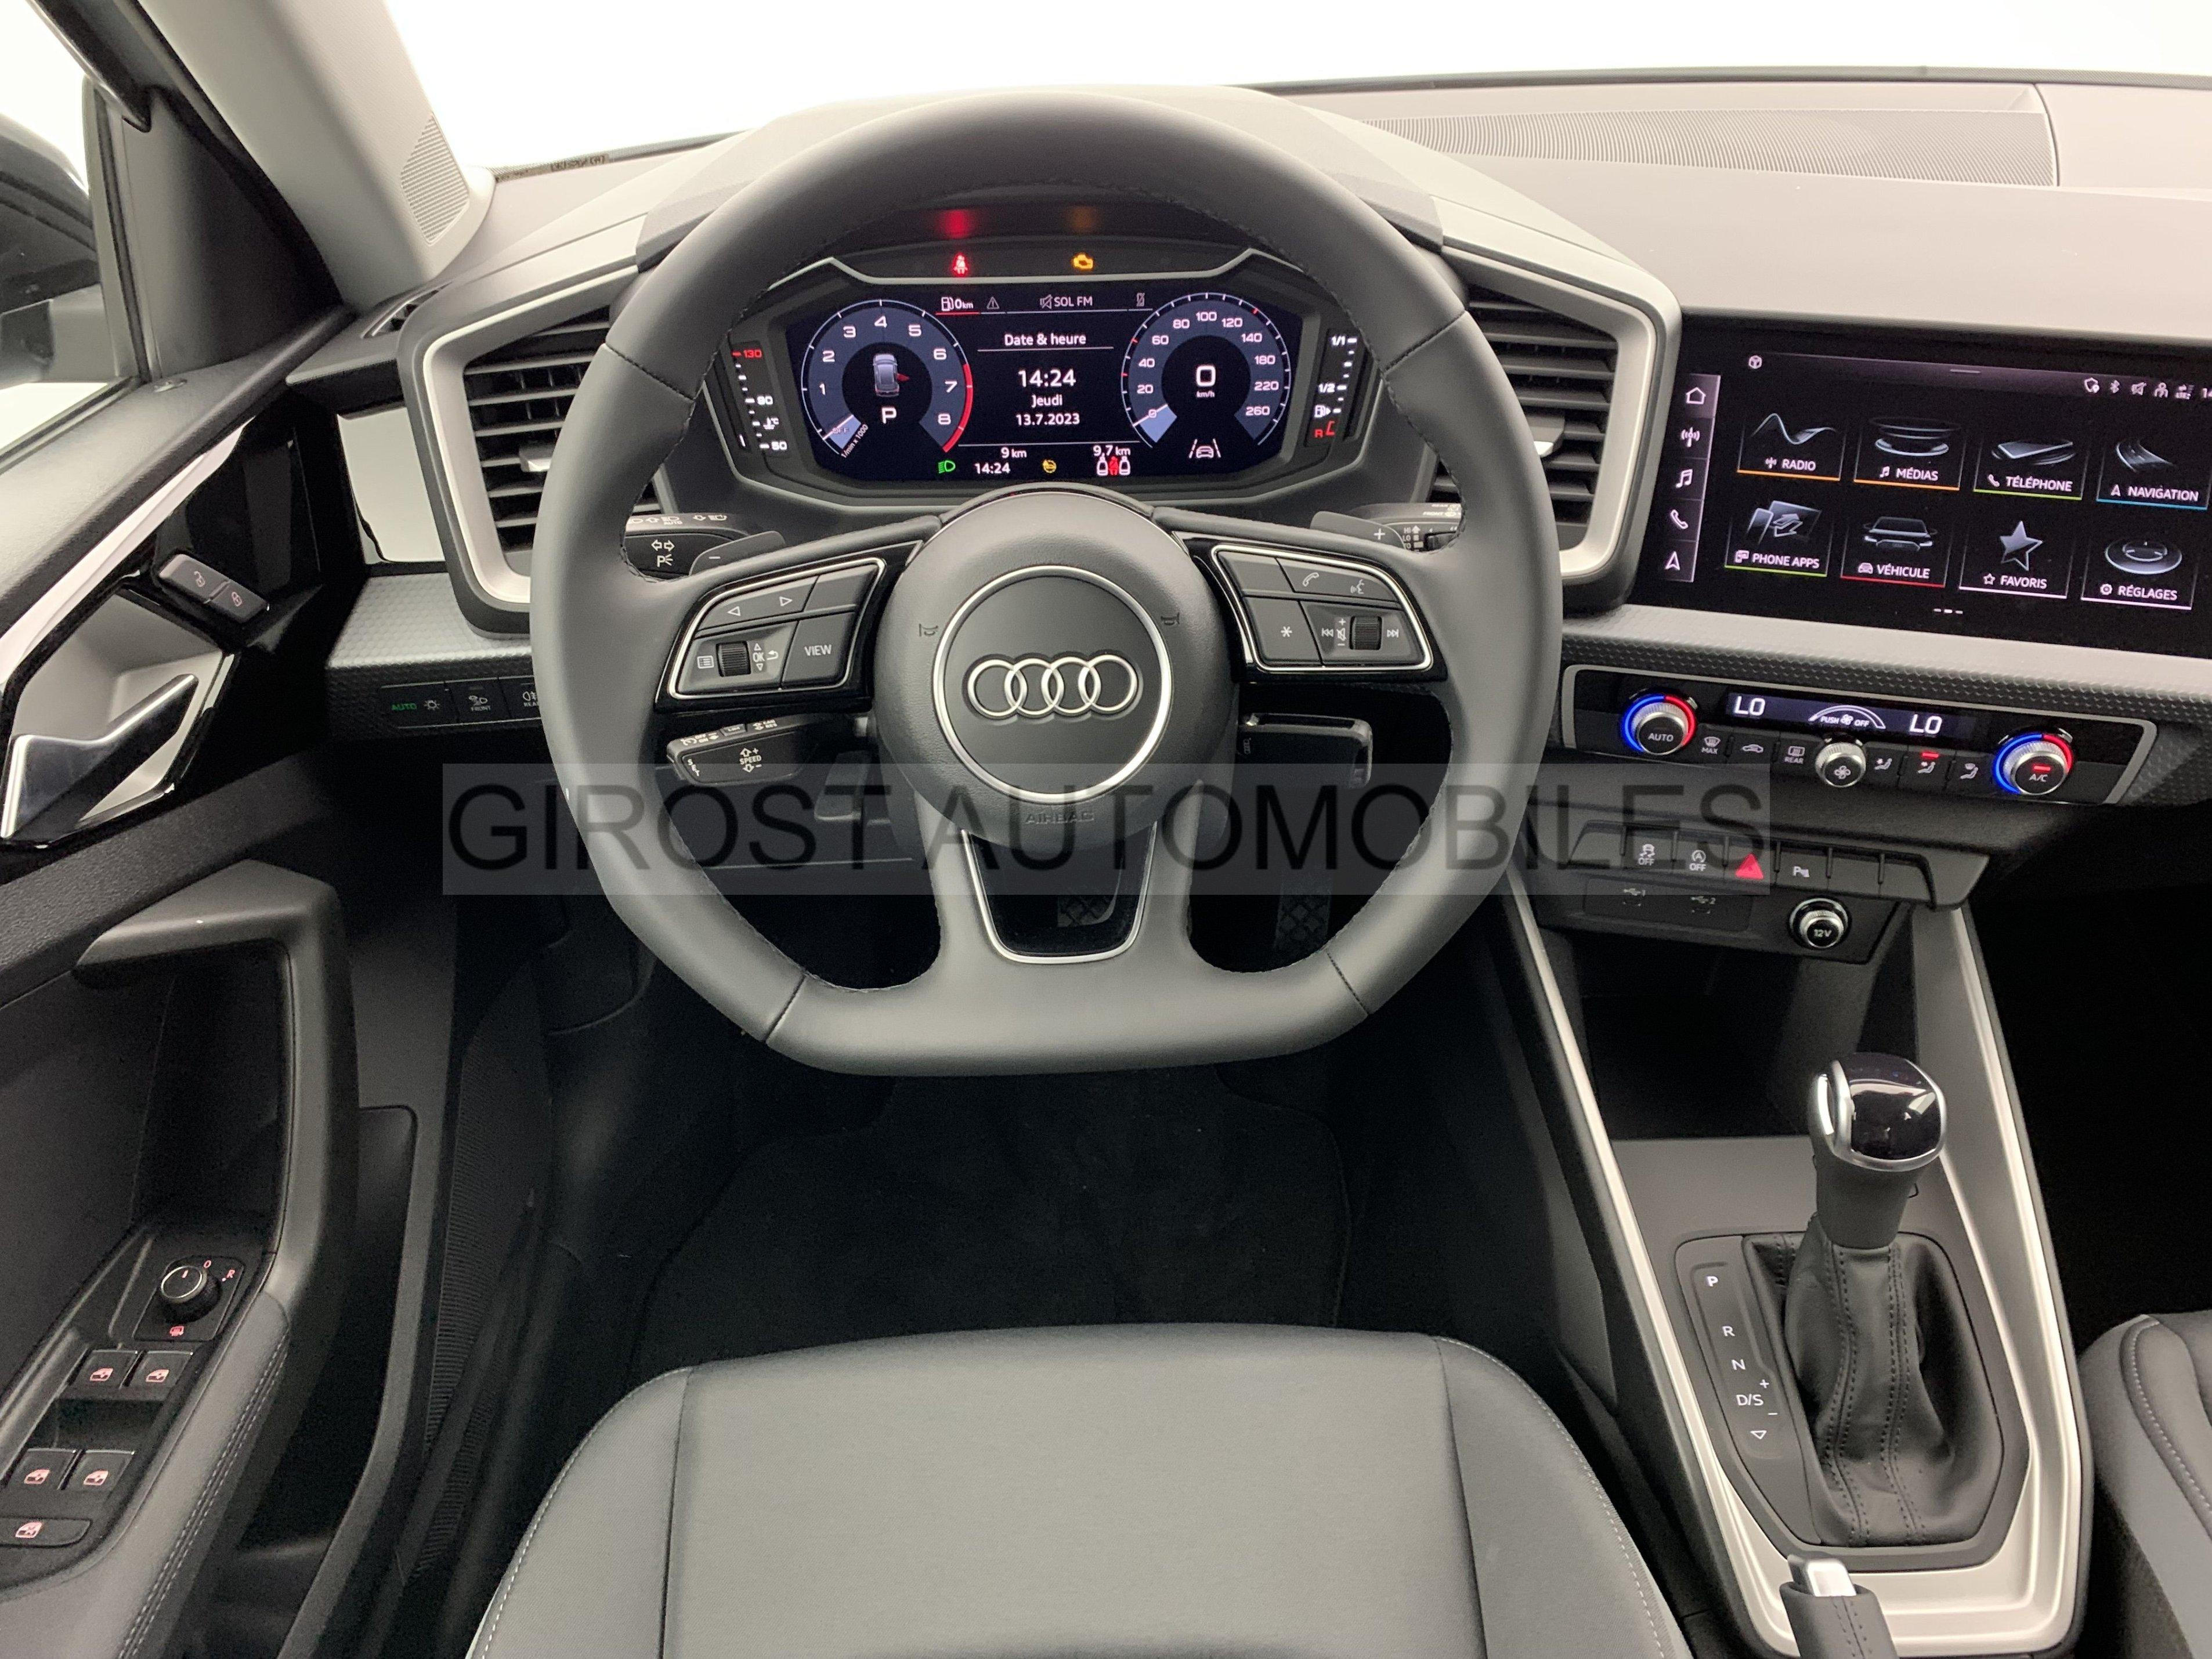 Audi A1 Sportback : du muscle et de l'agressivité en plus